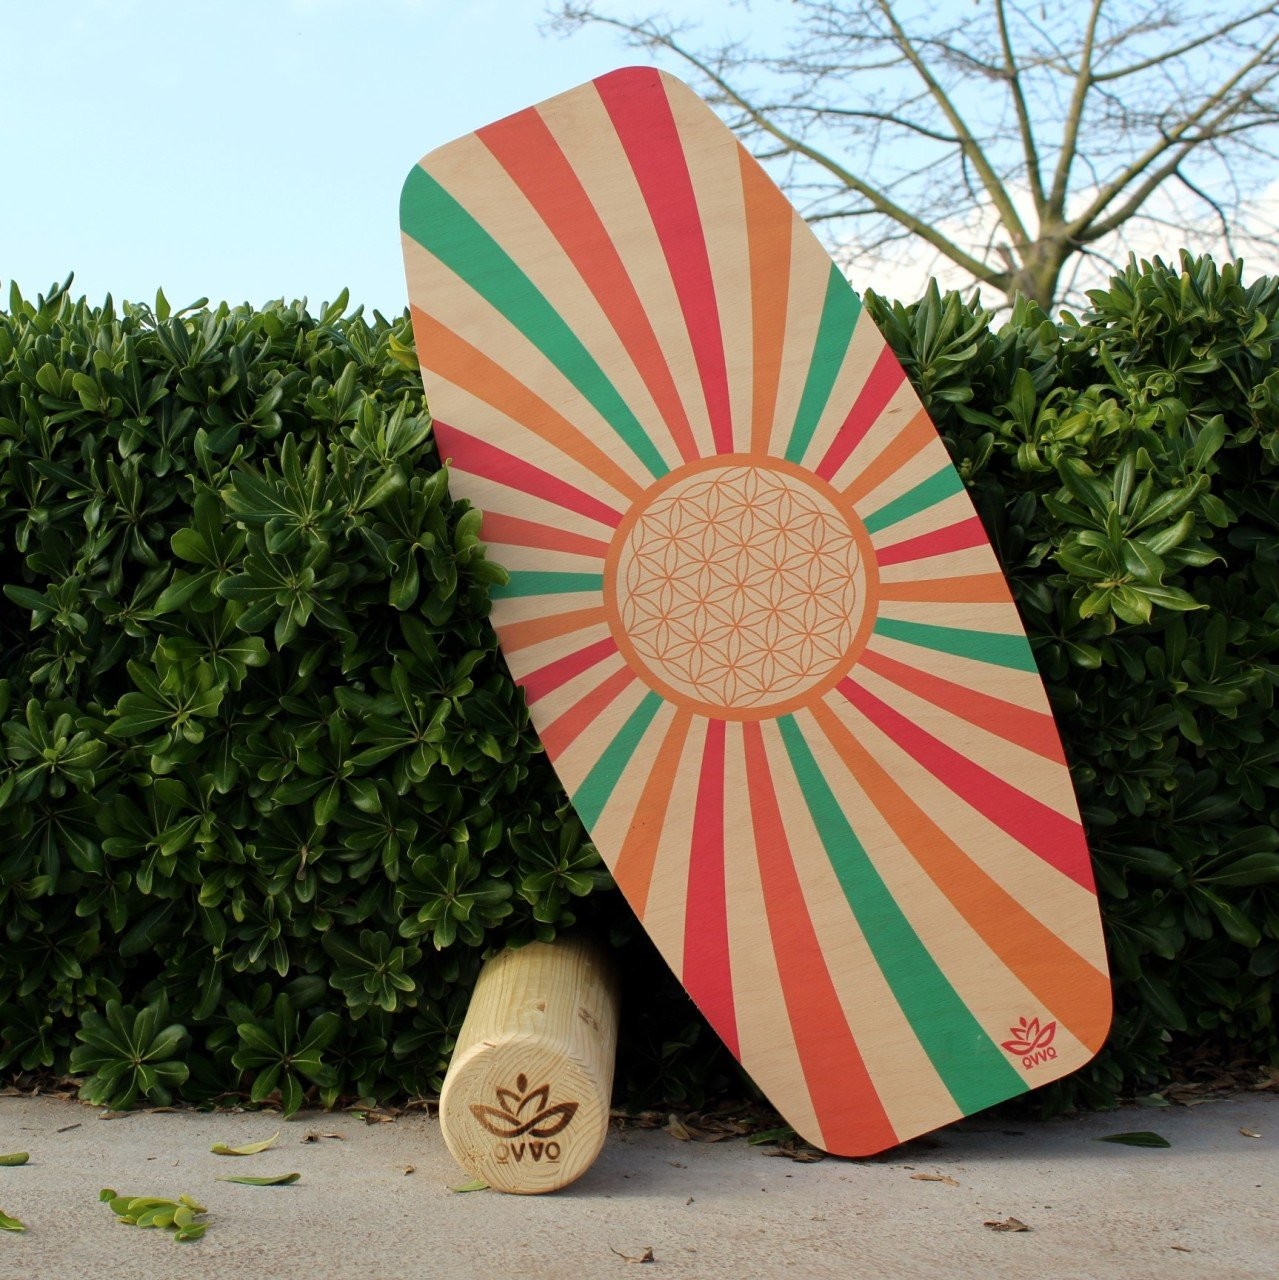 Planche d'équilibre pour la vie | Planche d'équilibre de style surf | Planche d'équilibre en bois avec rouleau | WoodNotion OVVO